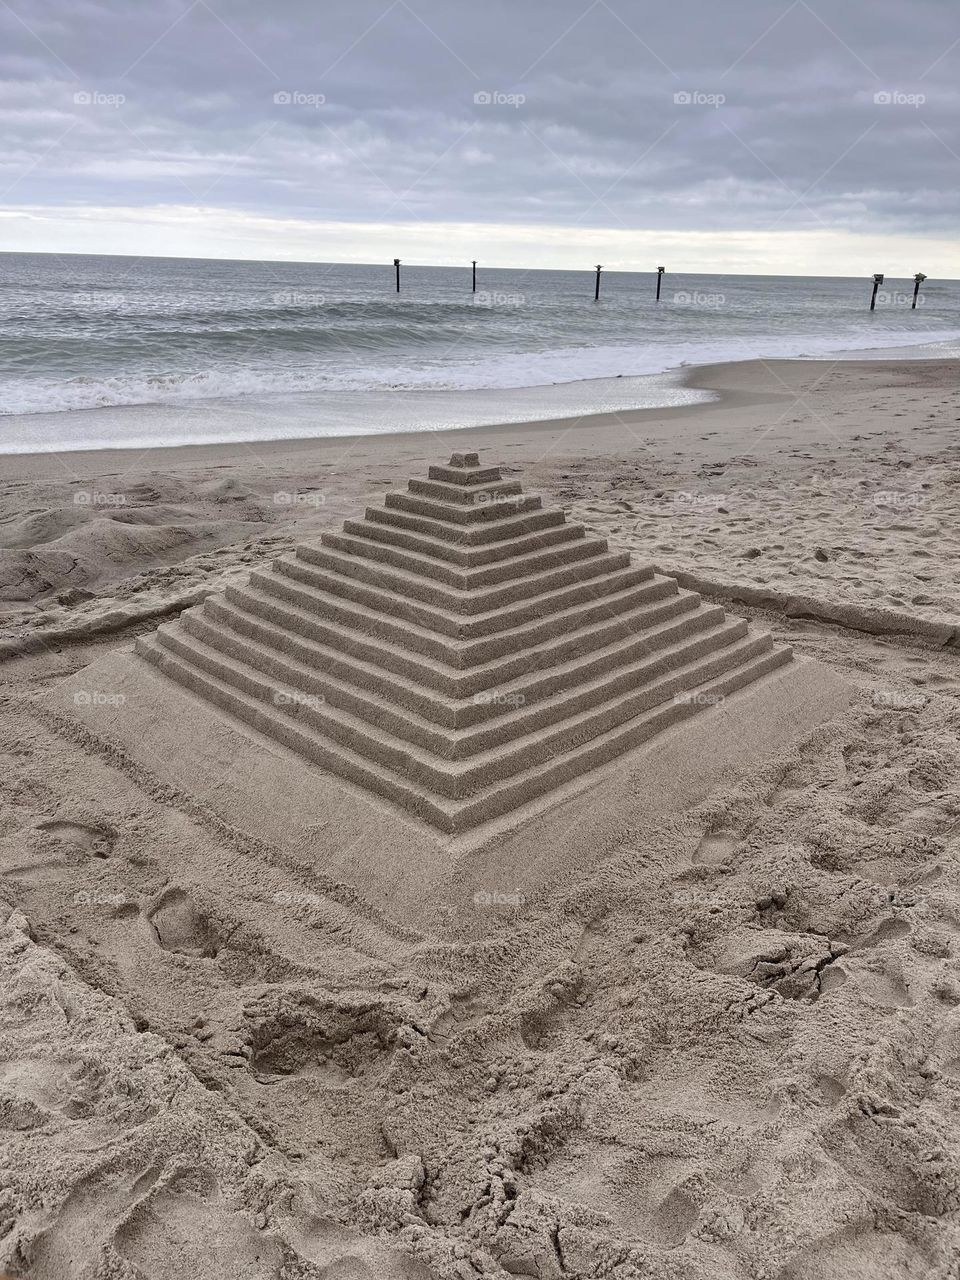 Sandcastles on the beach 